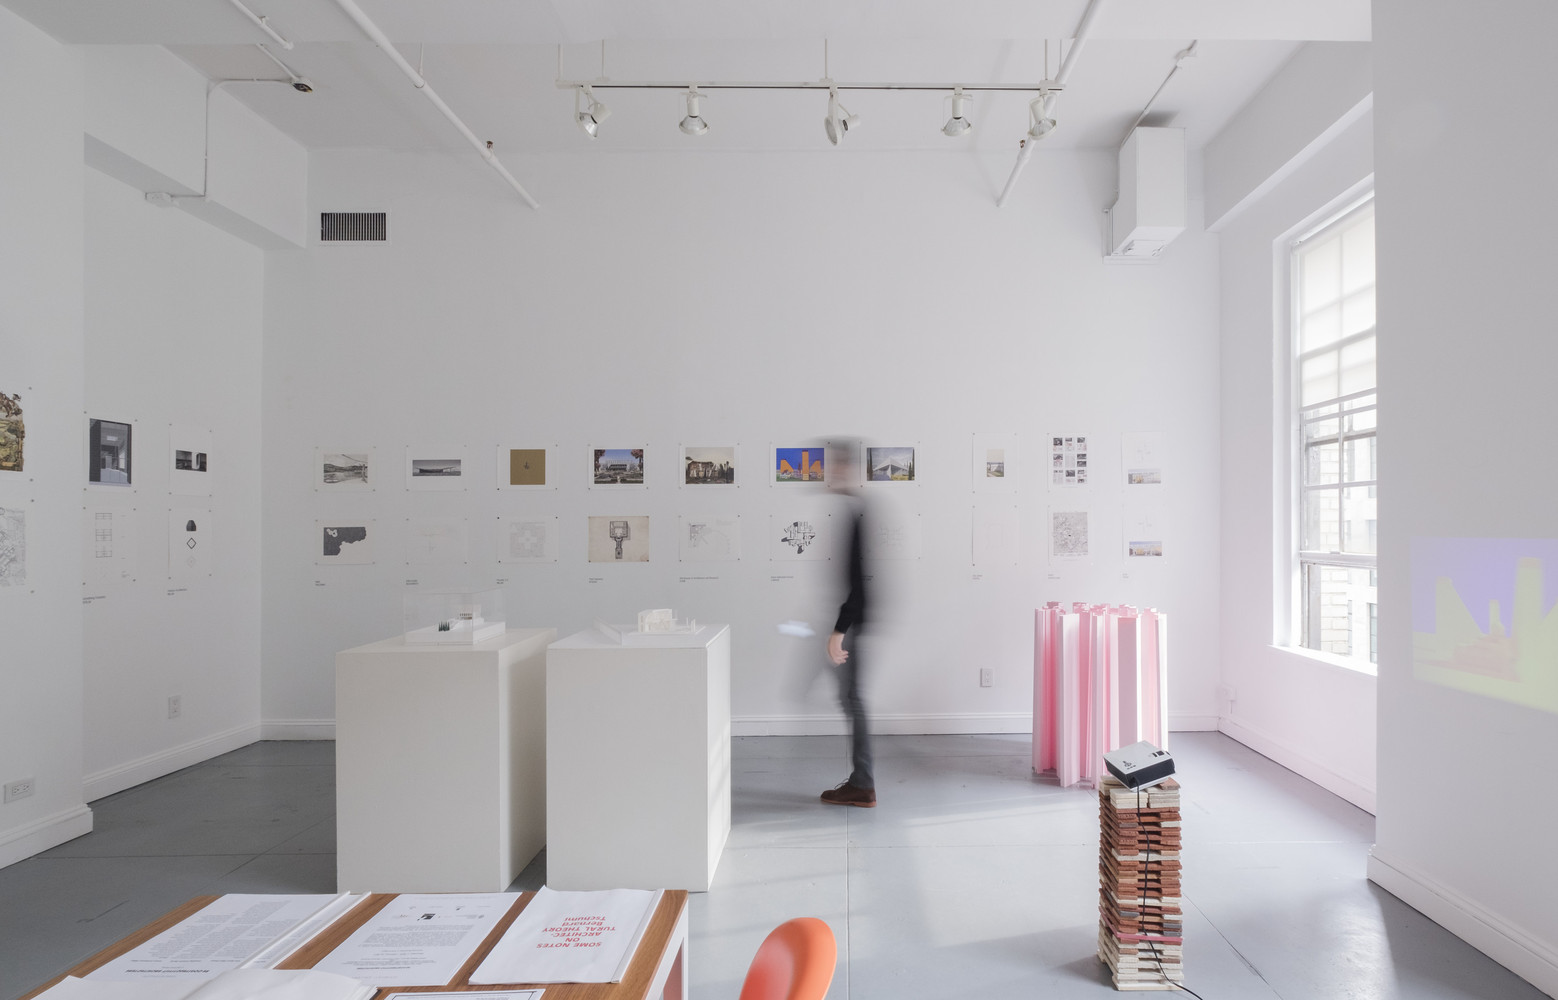 “重构主义建筑”展探索了遗失的建筑艺术语言